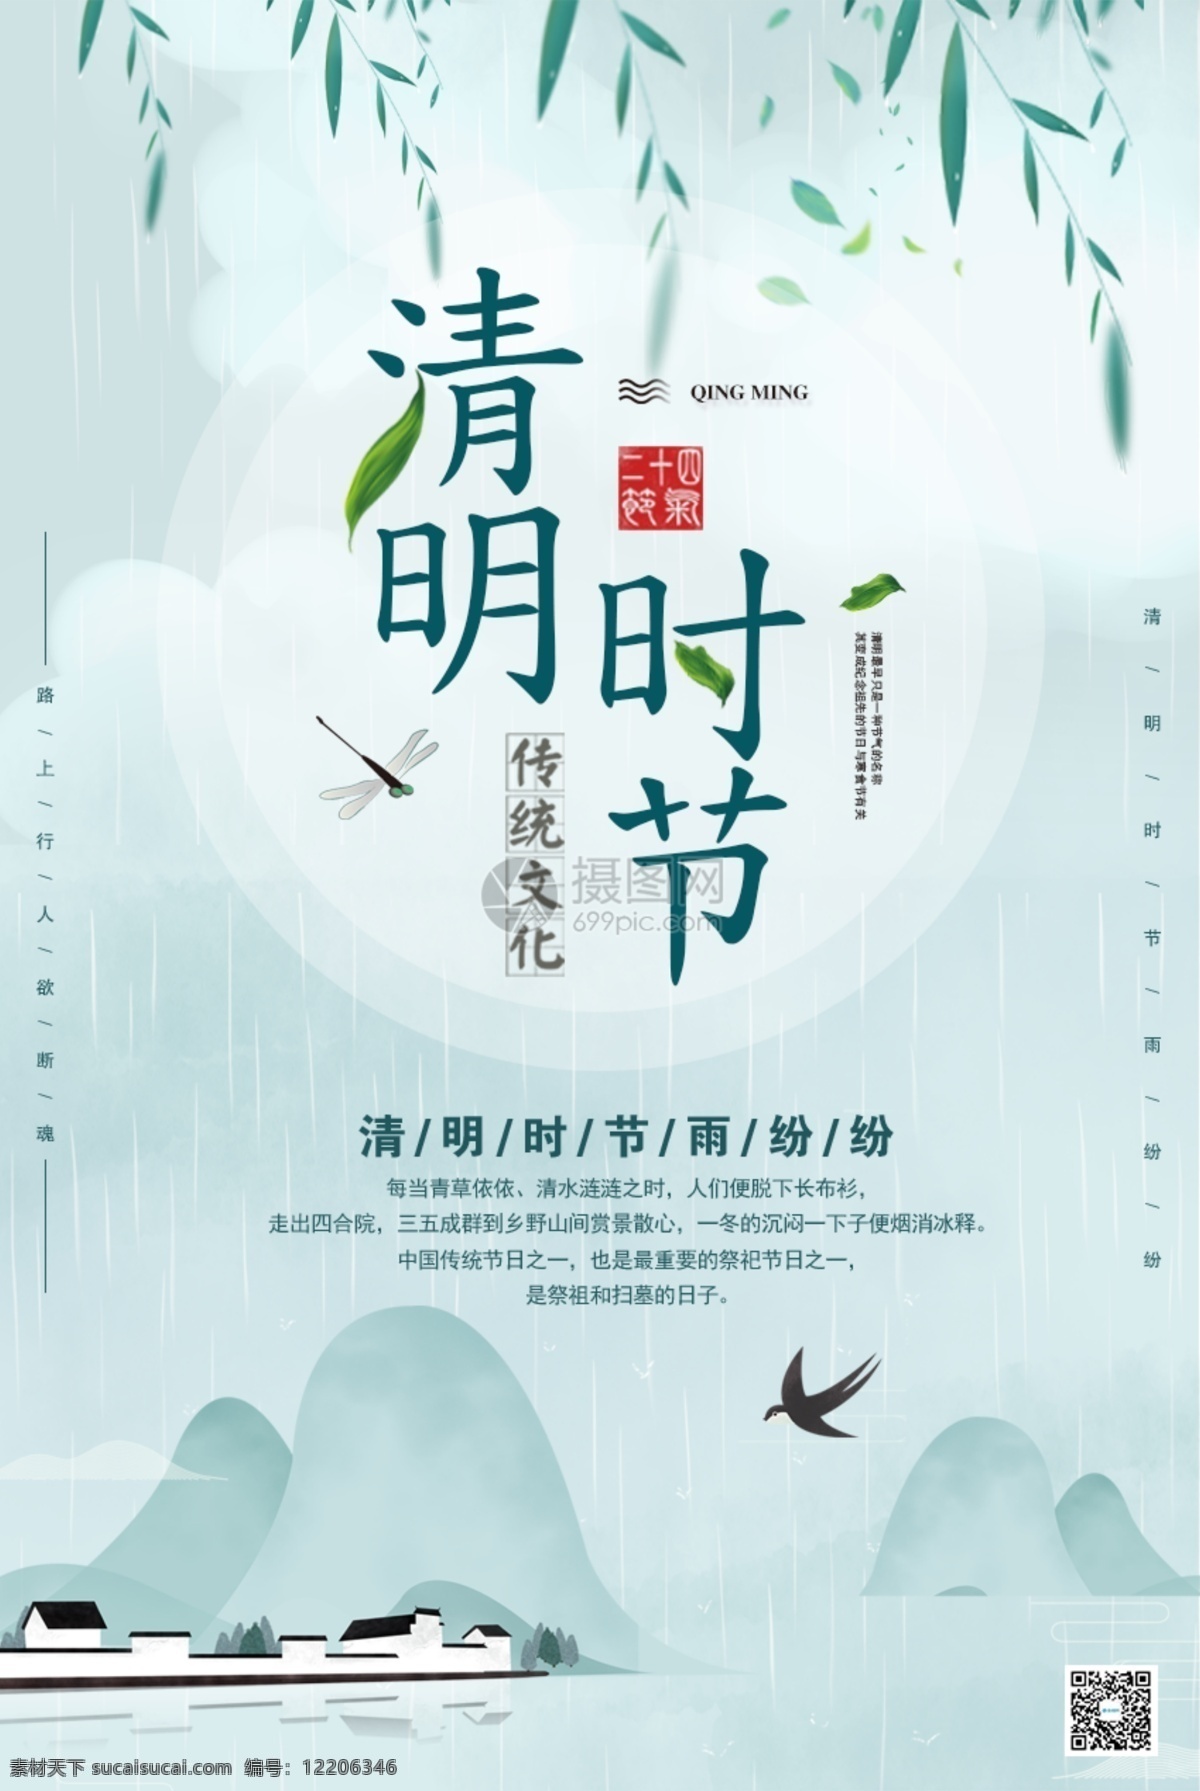 中国 风 清明节 节日 海报 踏青 简洁 绿色 青色 烟雨 中国风 传统节日 水墨 山村